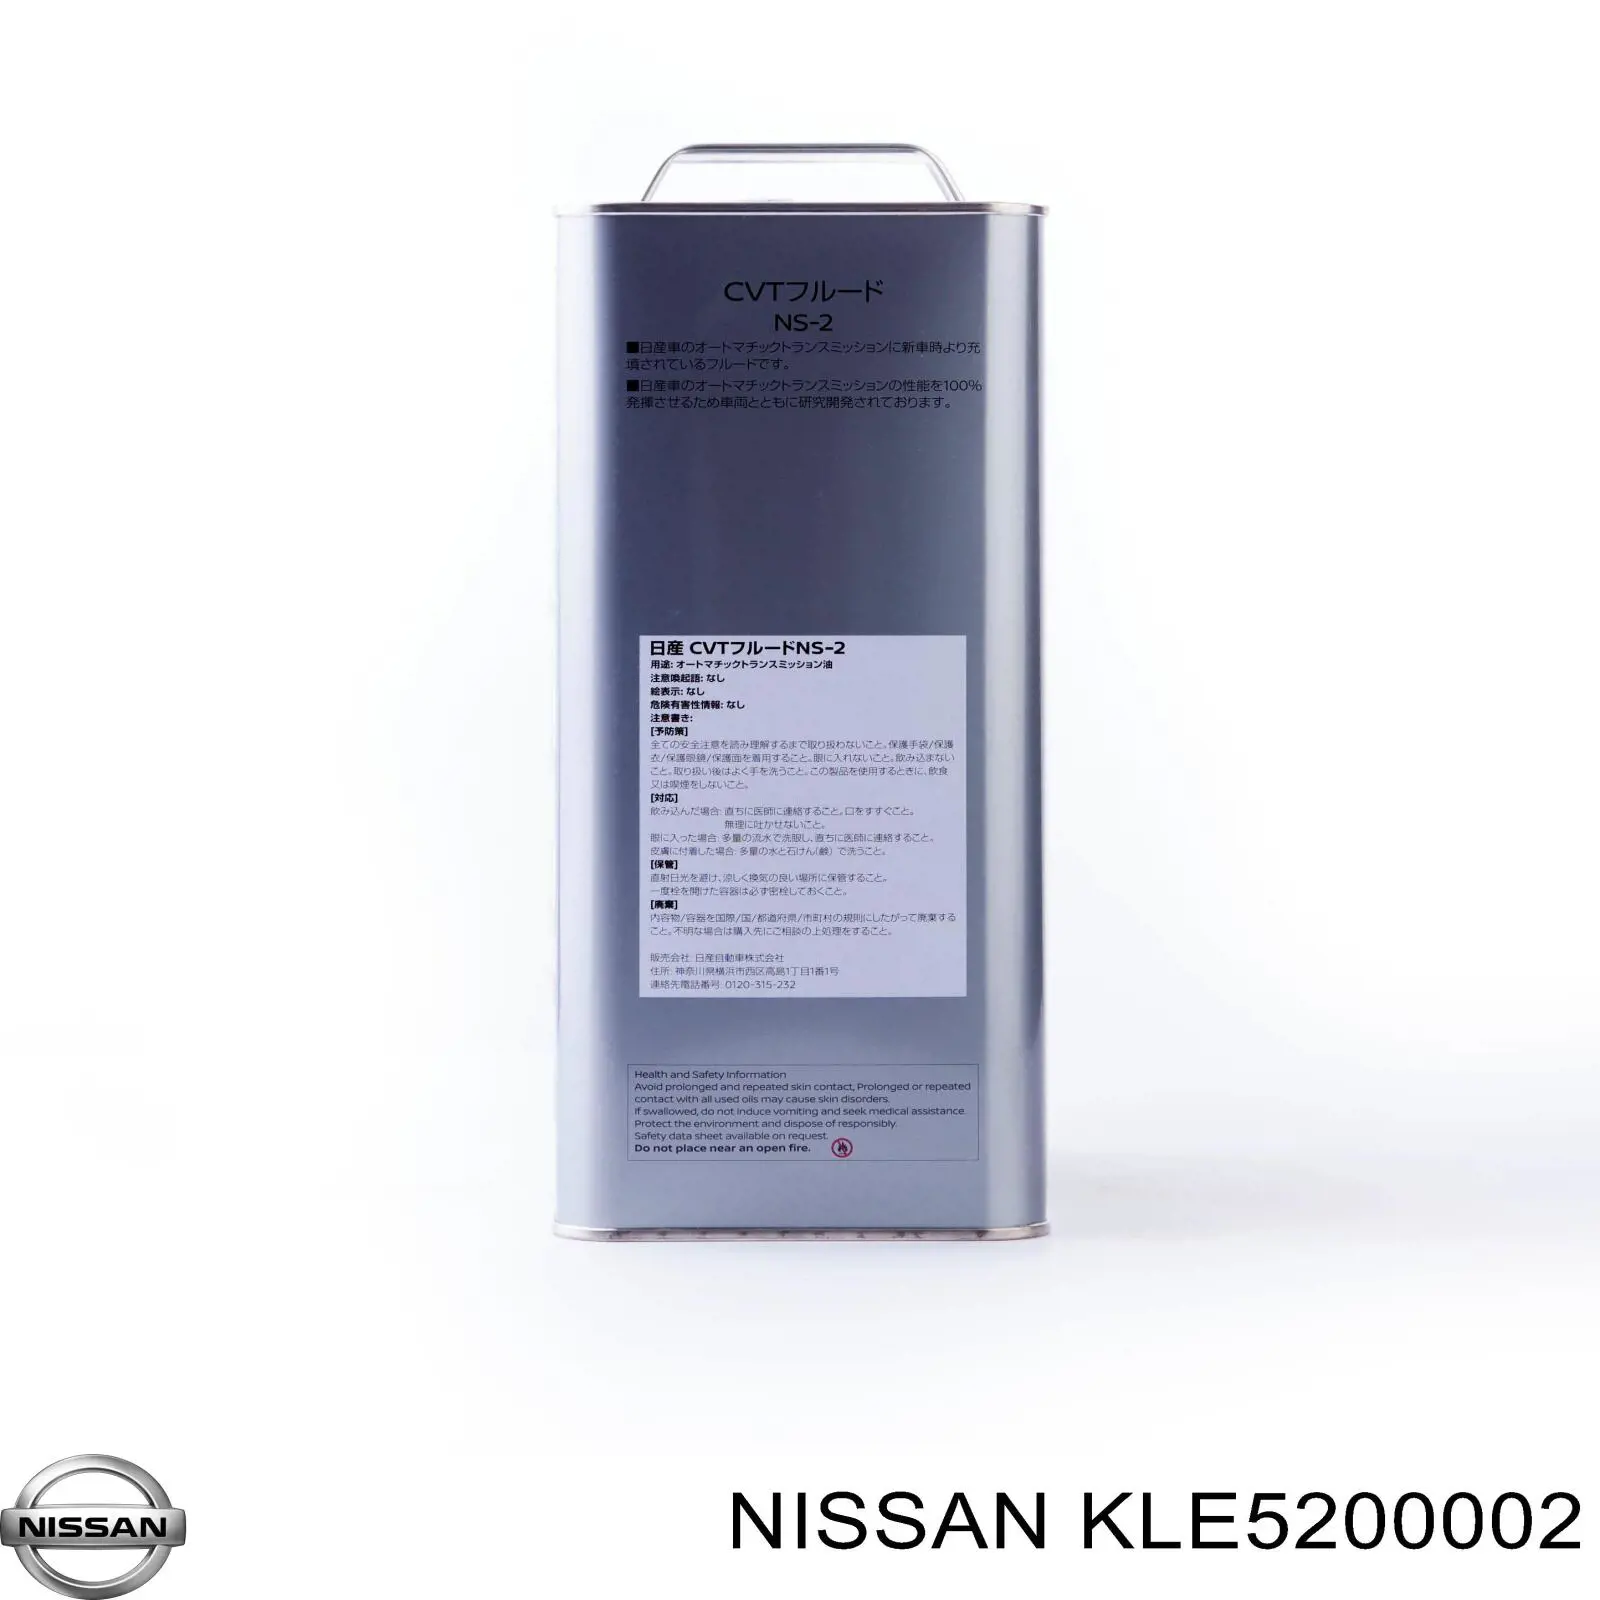  Масло трансмиссионное Nissan CVT NS-2 20 л (KLE5200002)